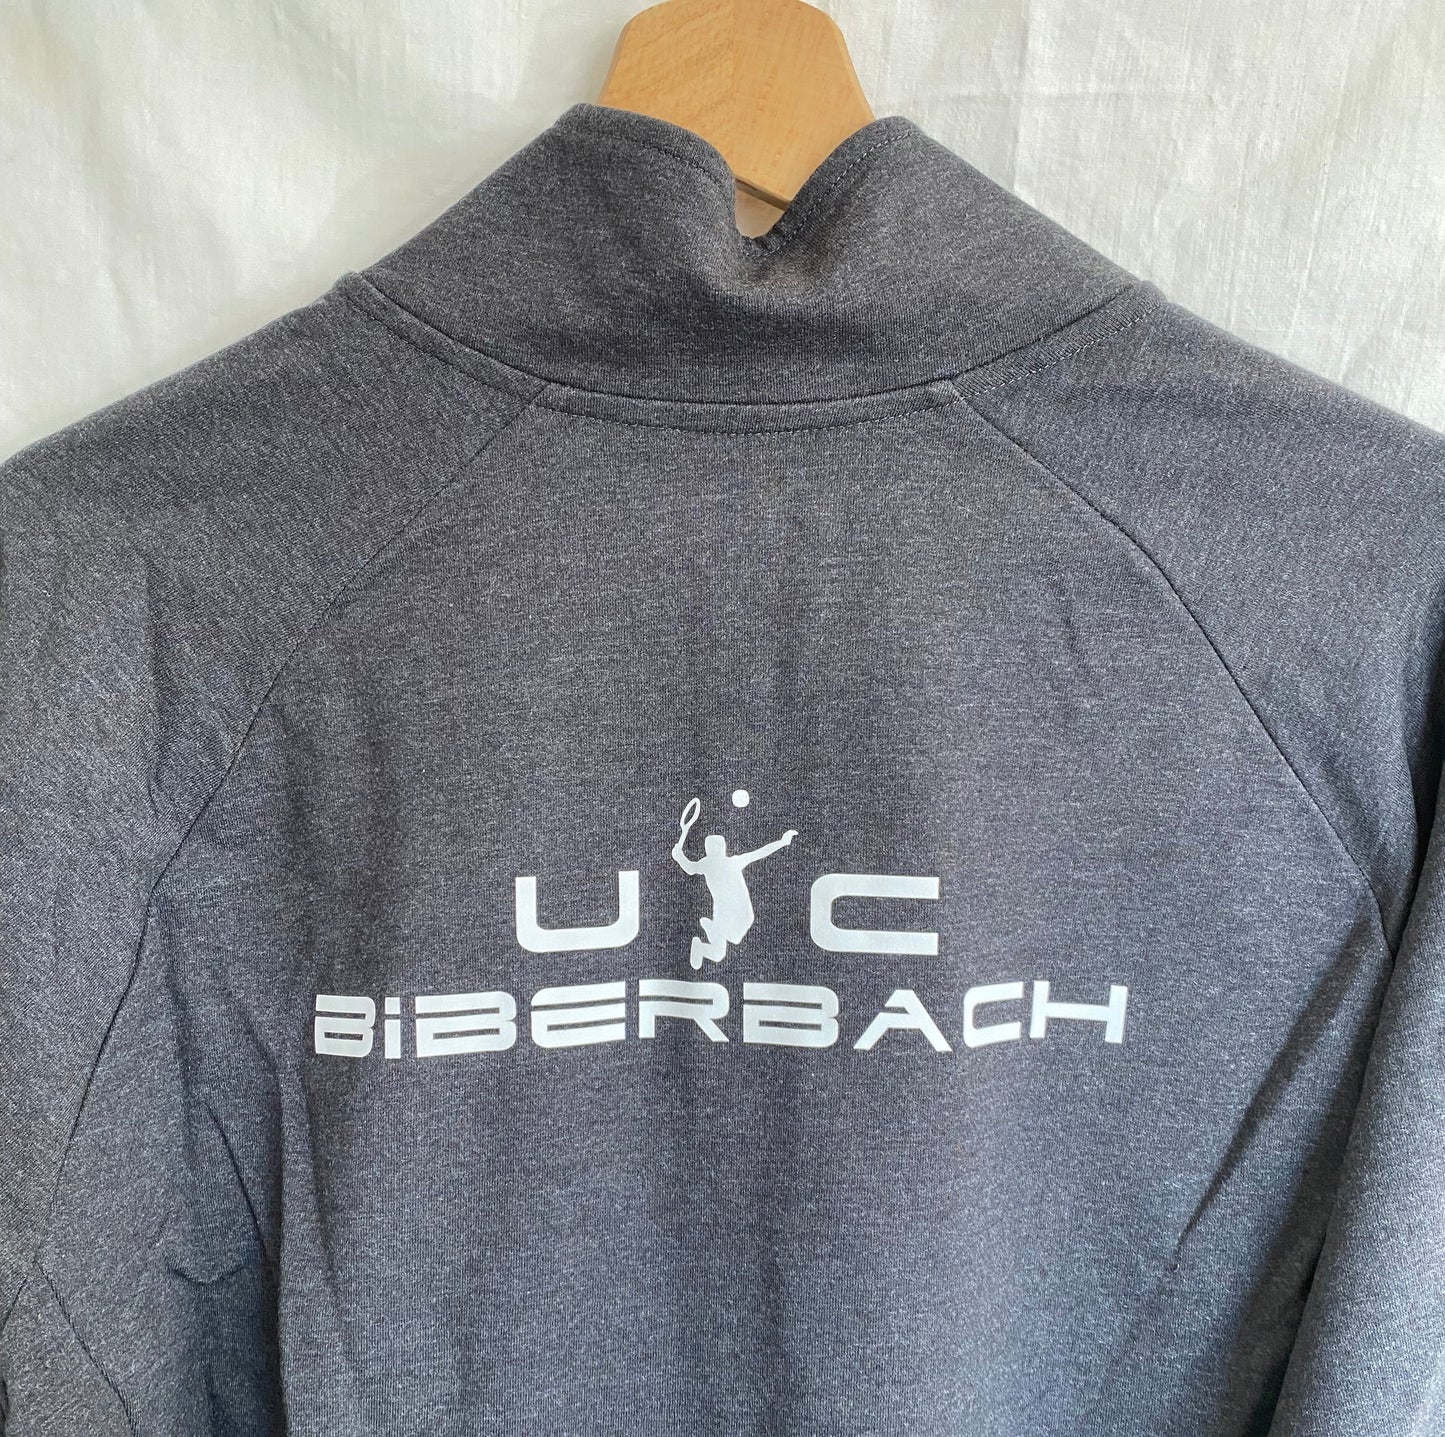 UTC Biberbach Set Herren - 4teilig